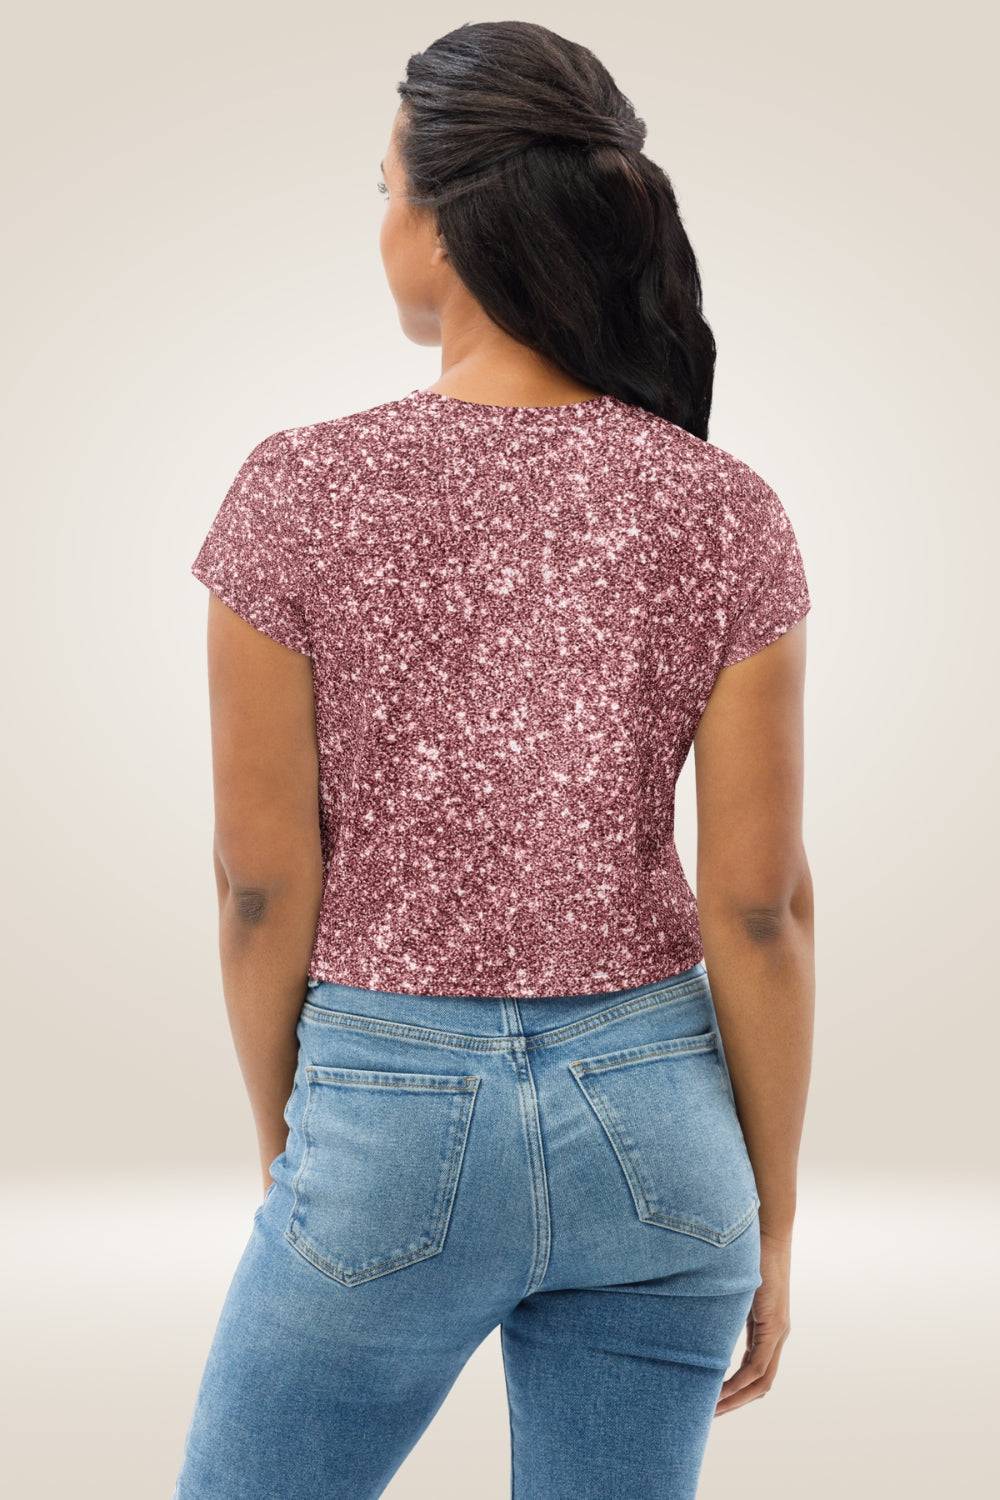 Pink Glitter Print Crop Top T Shirt - TGC Boutique - Crop Top